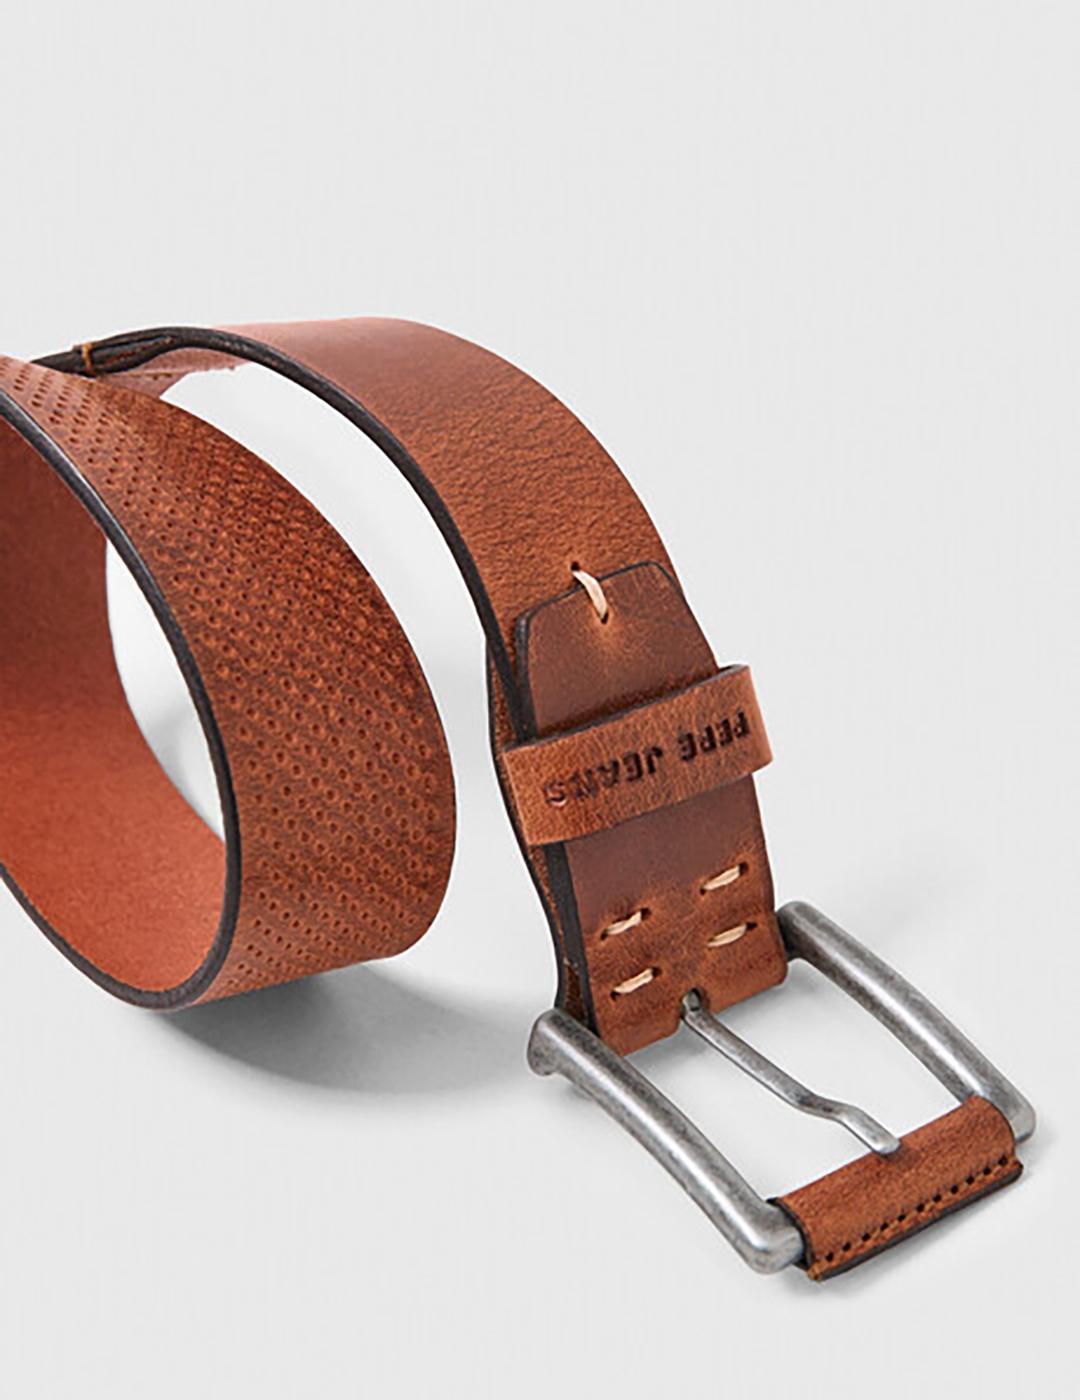 Cinturon con perforaciones lenny belt